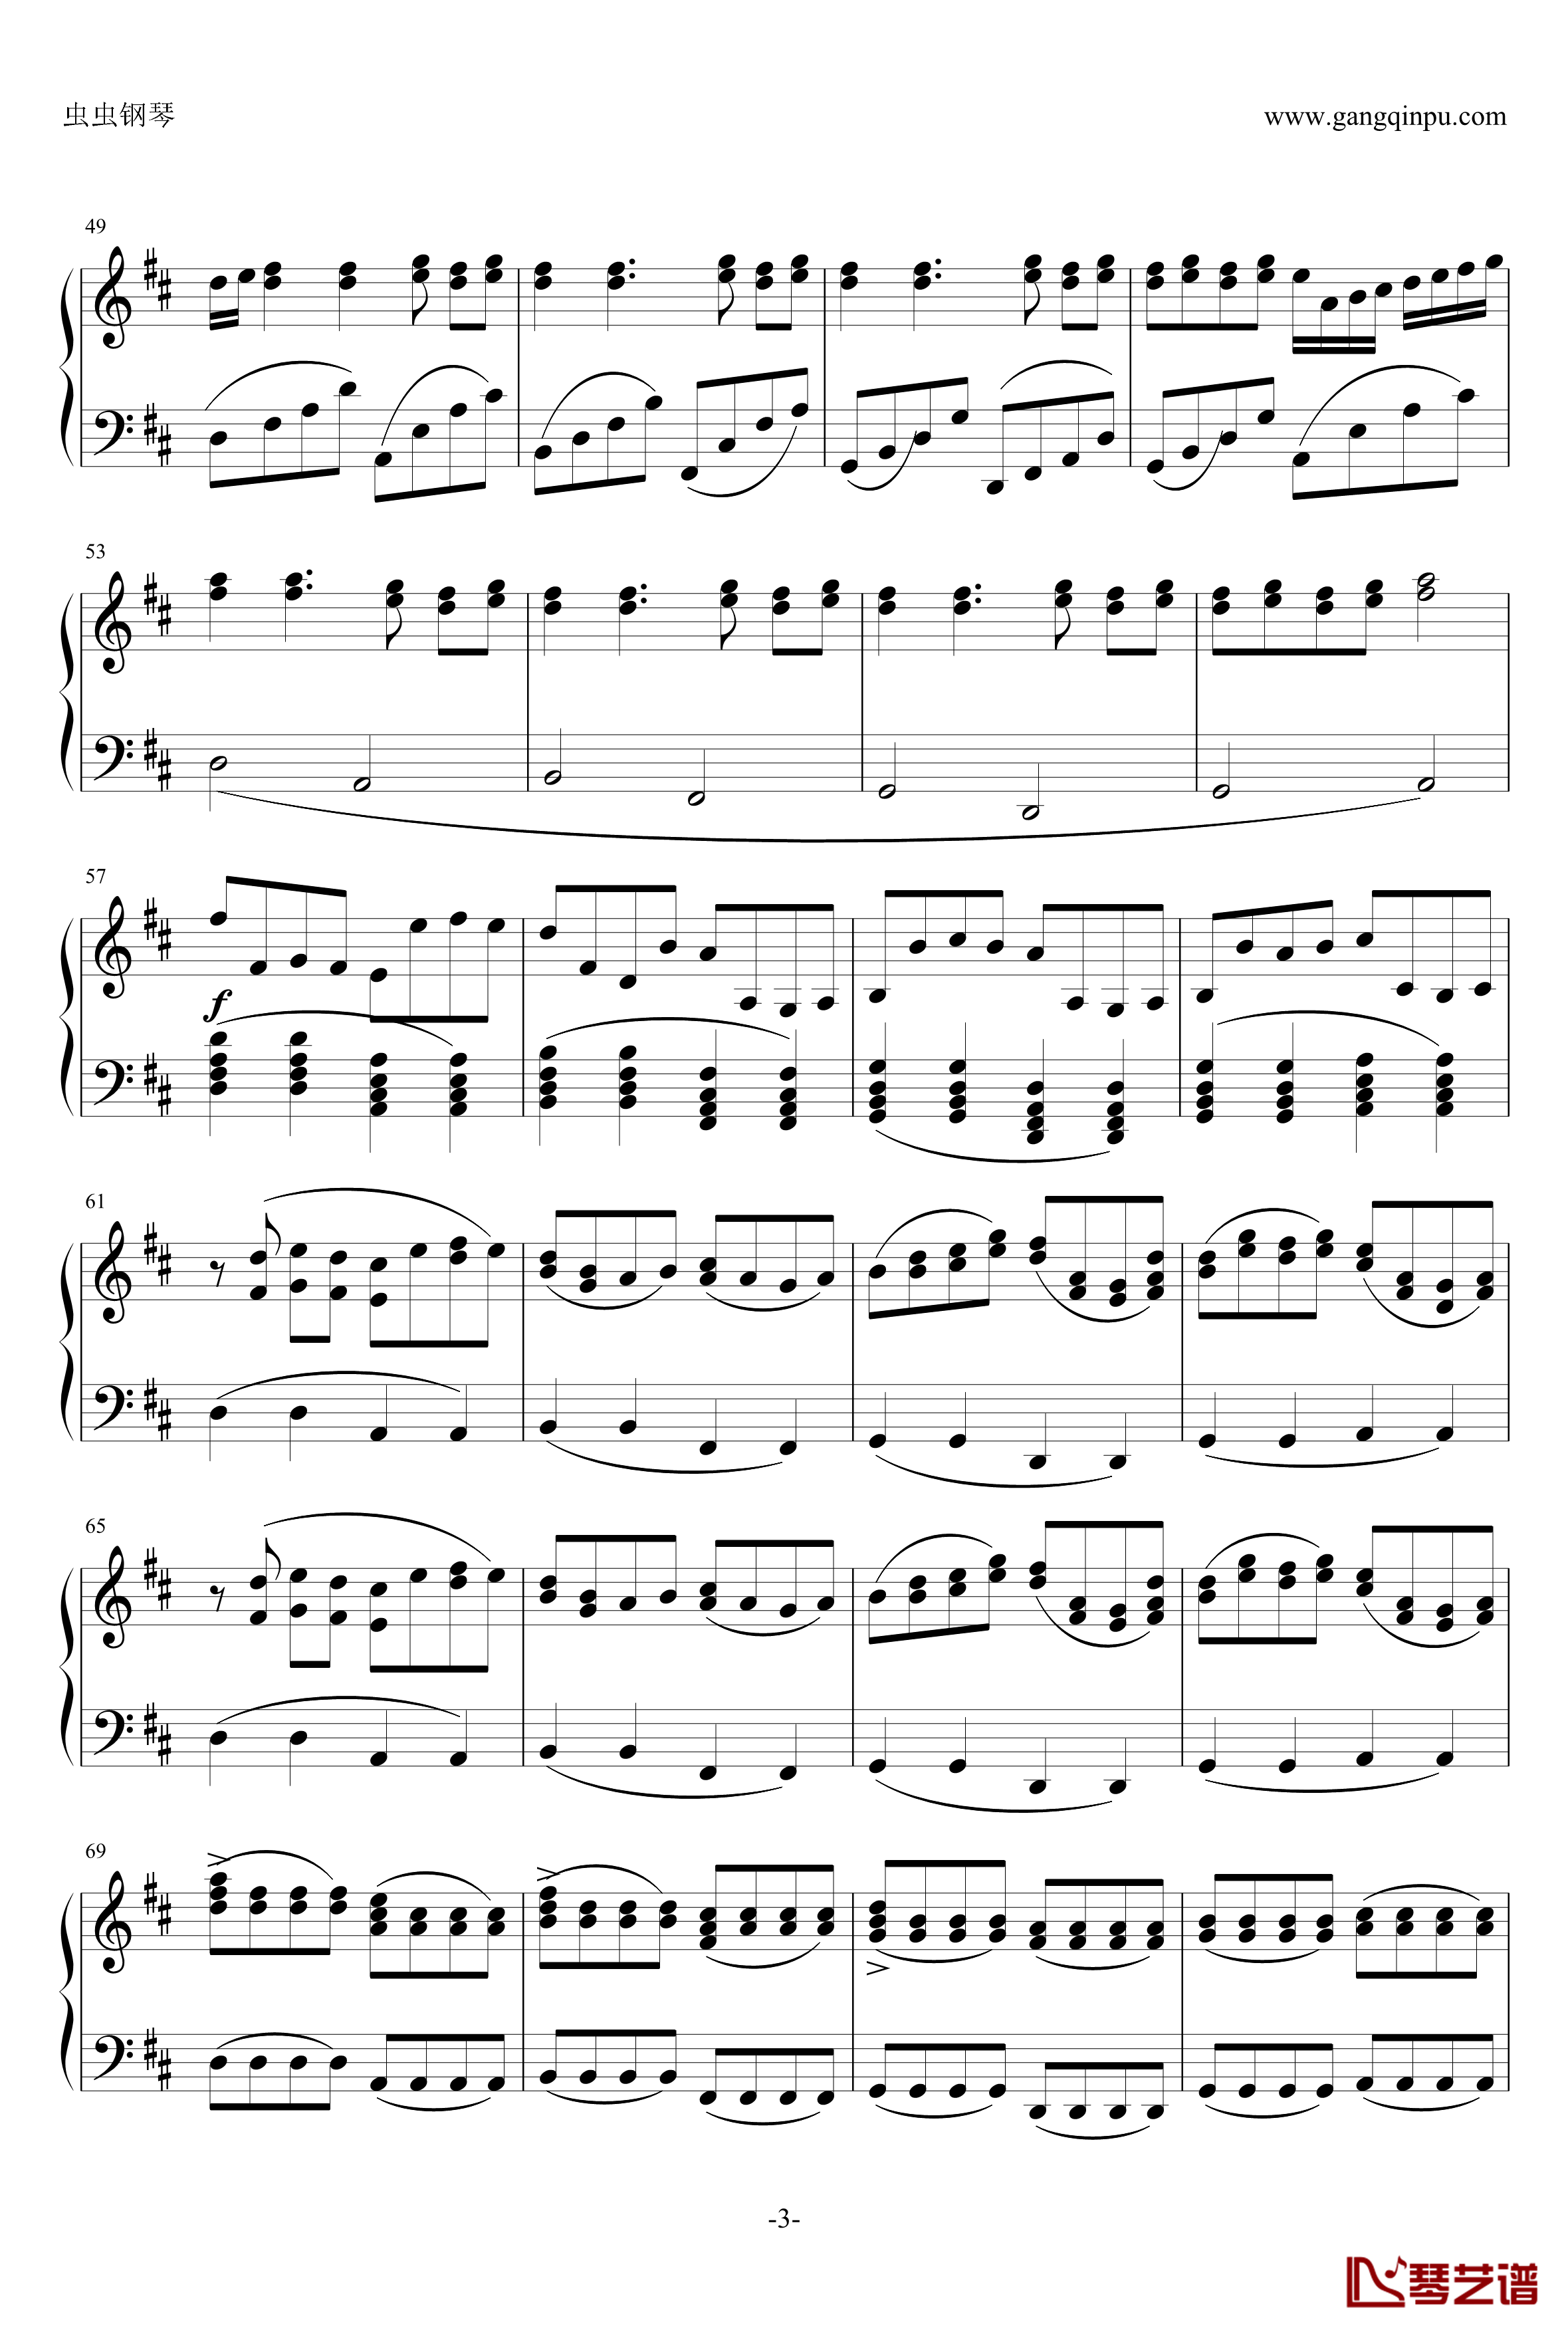 帕赫贝尔钢琴谱-Pacheble's Canon in D Long Version-Pachelbel3